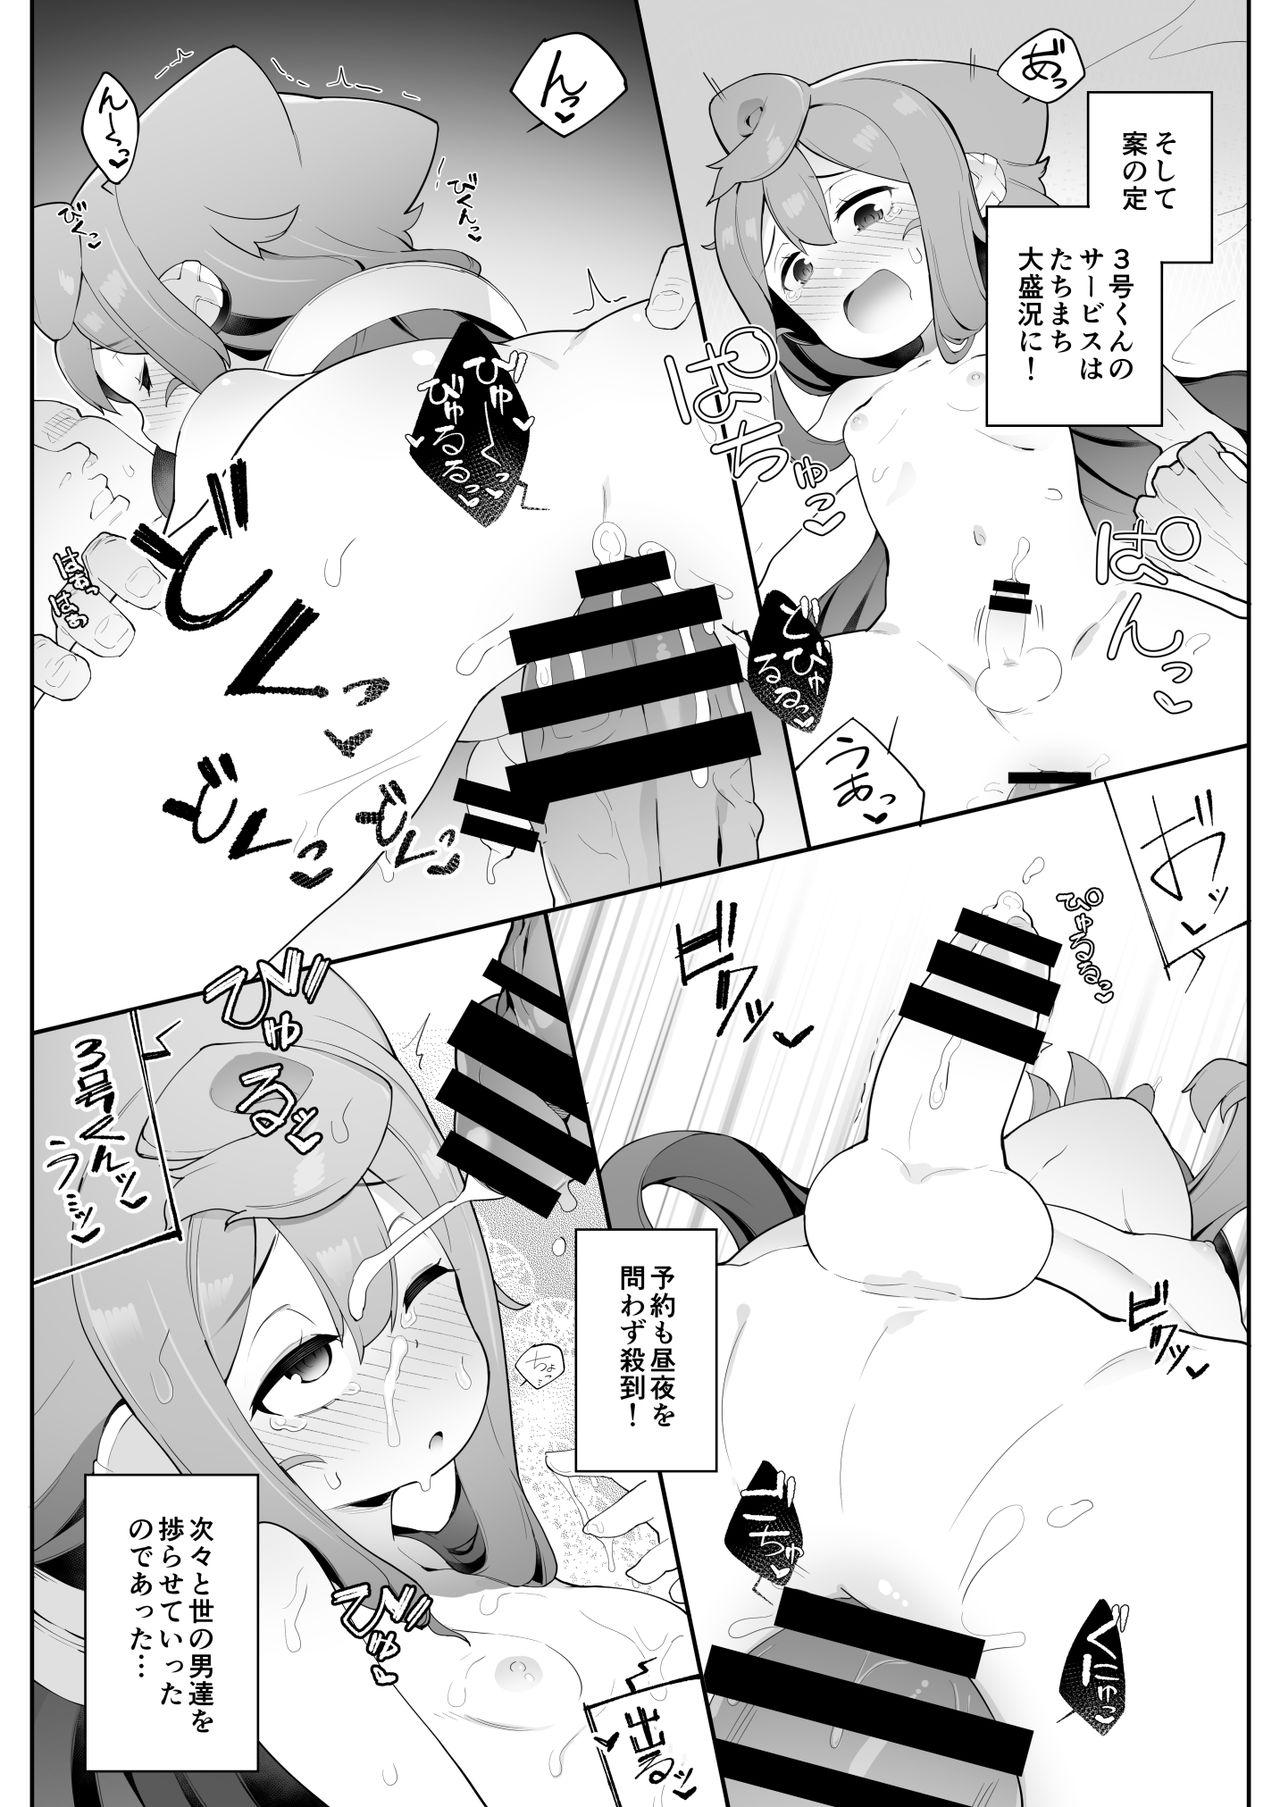 Fucking Girls (Akihabara Chou Doujinsai) [Kuropoplar (Nyakkuru)] HakaDol! 3-gou-kun no Mesuochi Tokunou DeliHeal Service (Hacka Doll) [Digital] - Hacka doll Asstomouth - Page 6